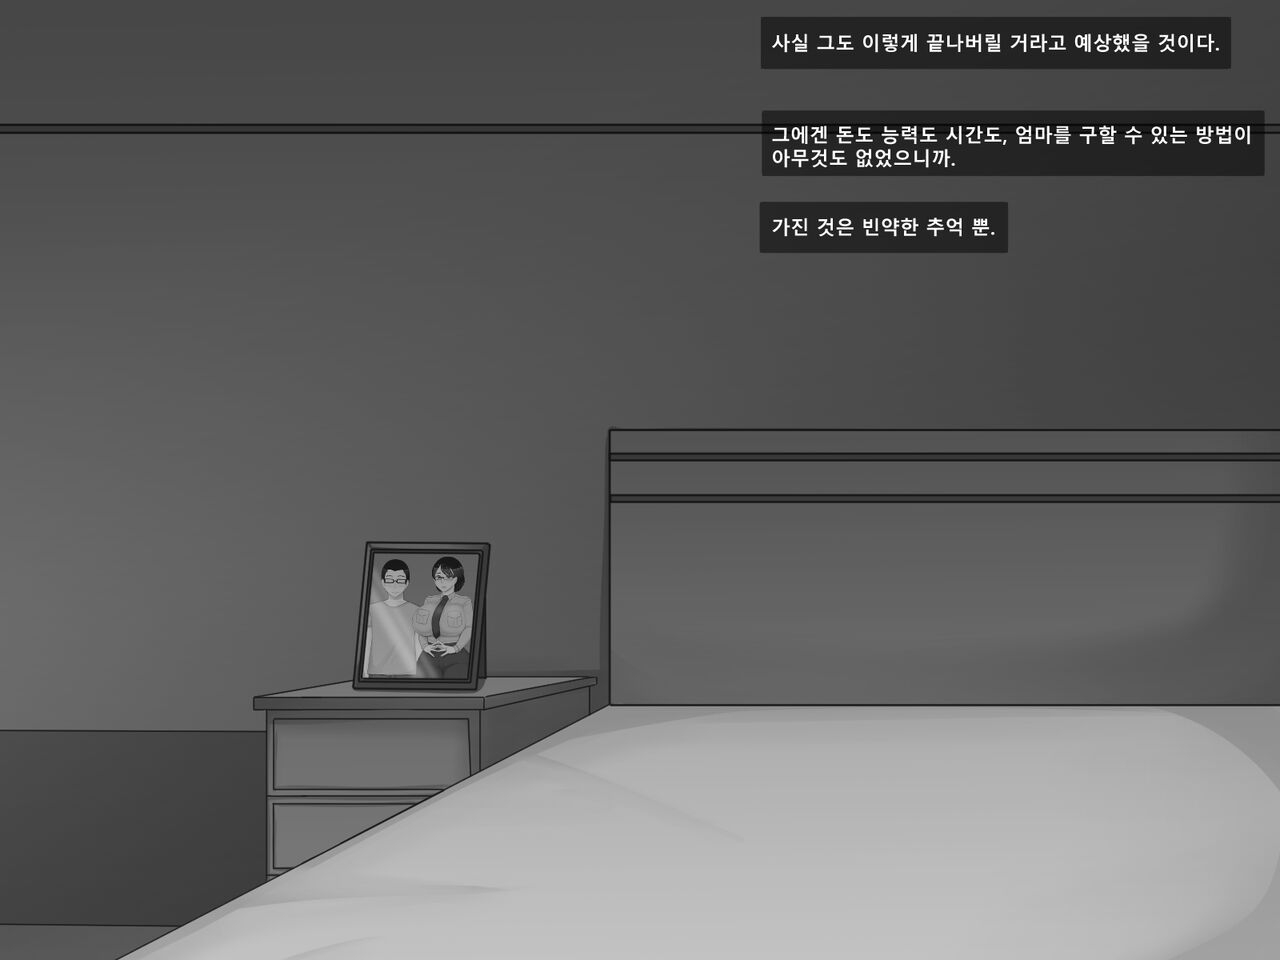 [BlackGG] Oh Yu -rim 40 years old part 1 Bad Ending [Korean] 21